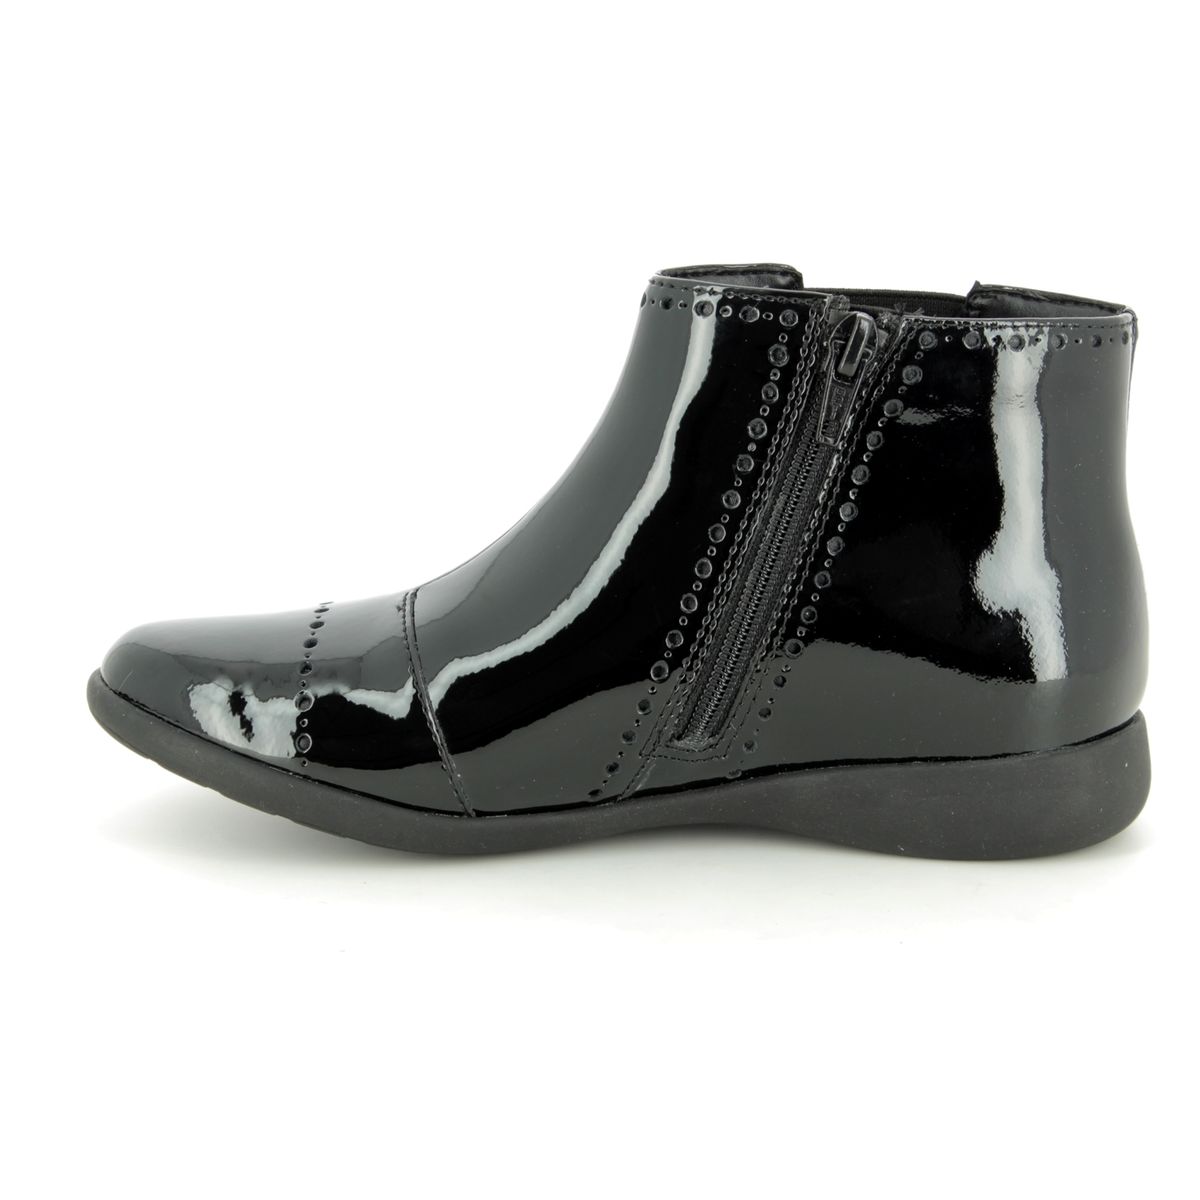 Clarks Etch Form K F Fit Black patent boots